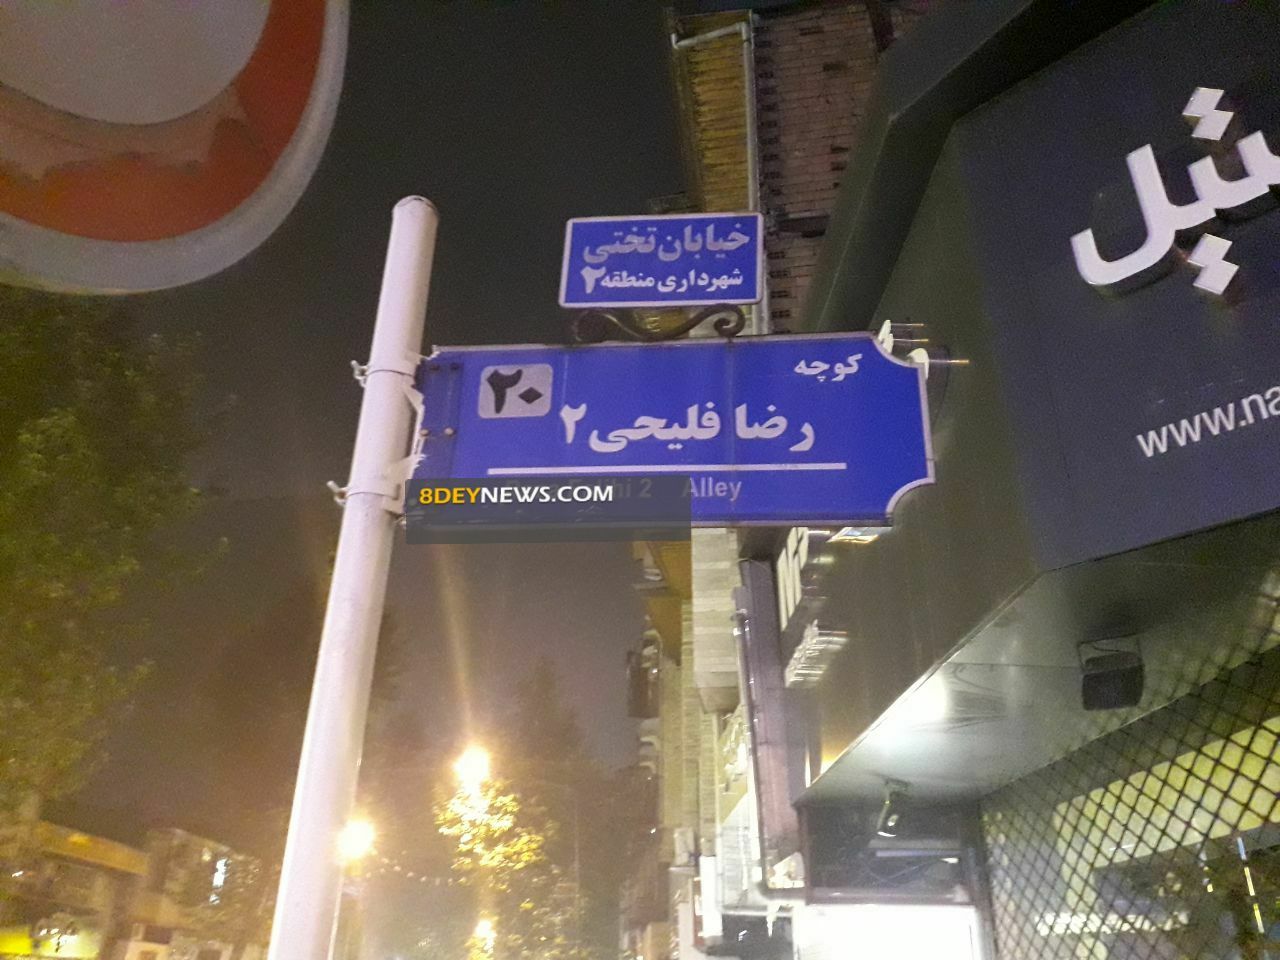 حذف نام “شهید” از خیابان های رشت + تصاویر